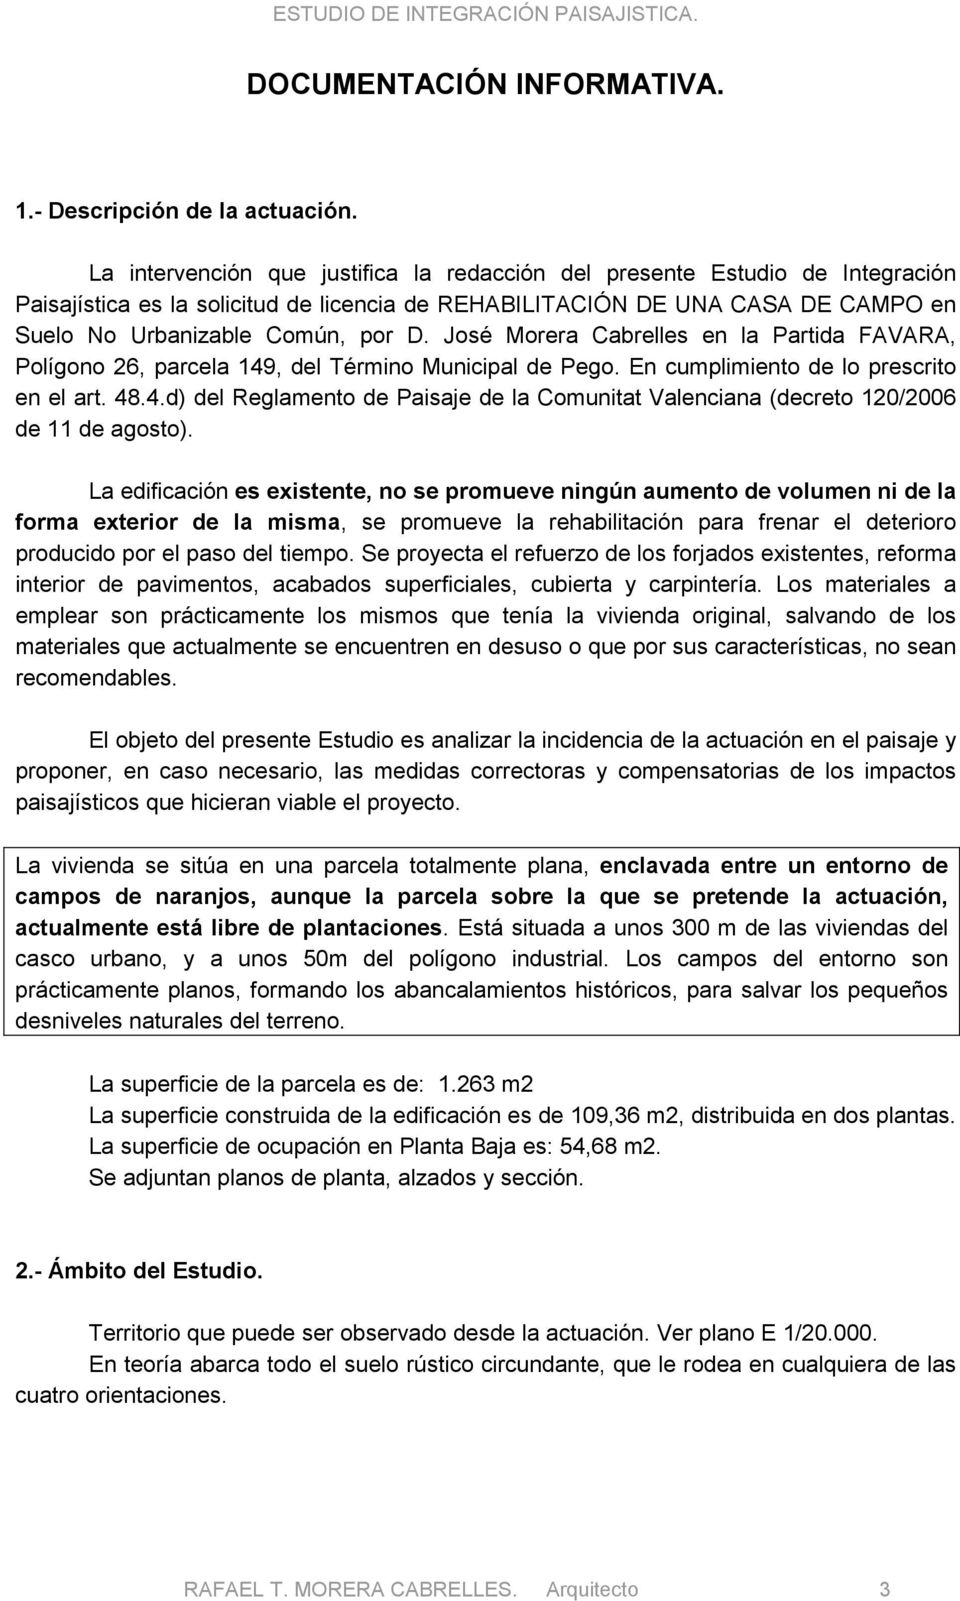 José Morera Cabrelles en la Partida FAVARA, Polígono 26, parcela 149, del Término Municipal de Pego. En cumplimiento de lo prescrito en el art. 48.4.d) del Reglamento de Paisaje de la Comunitat Valenciana (decreto 120/2006 de 11 de agosto).